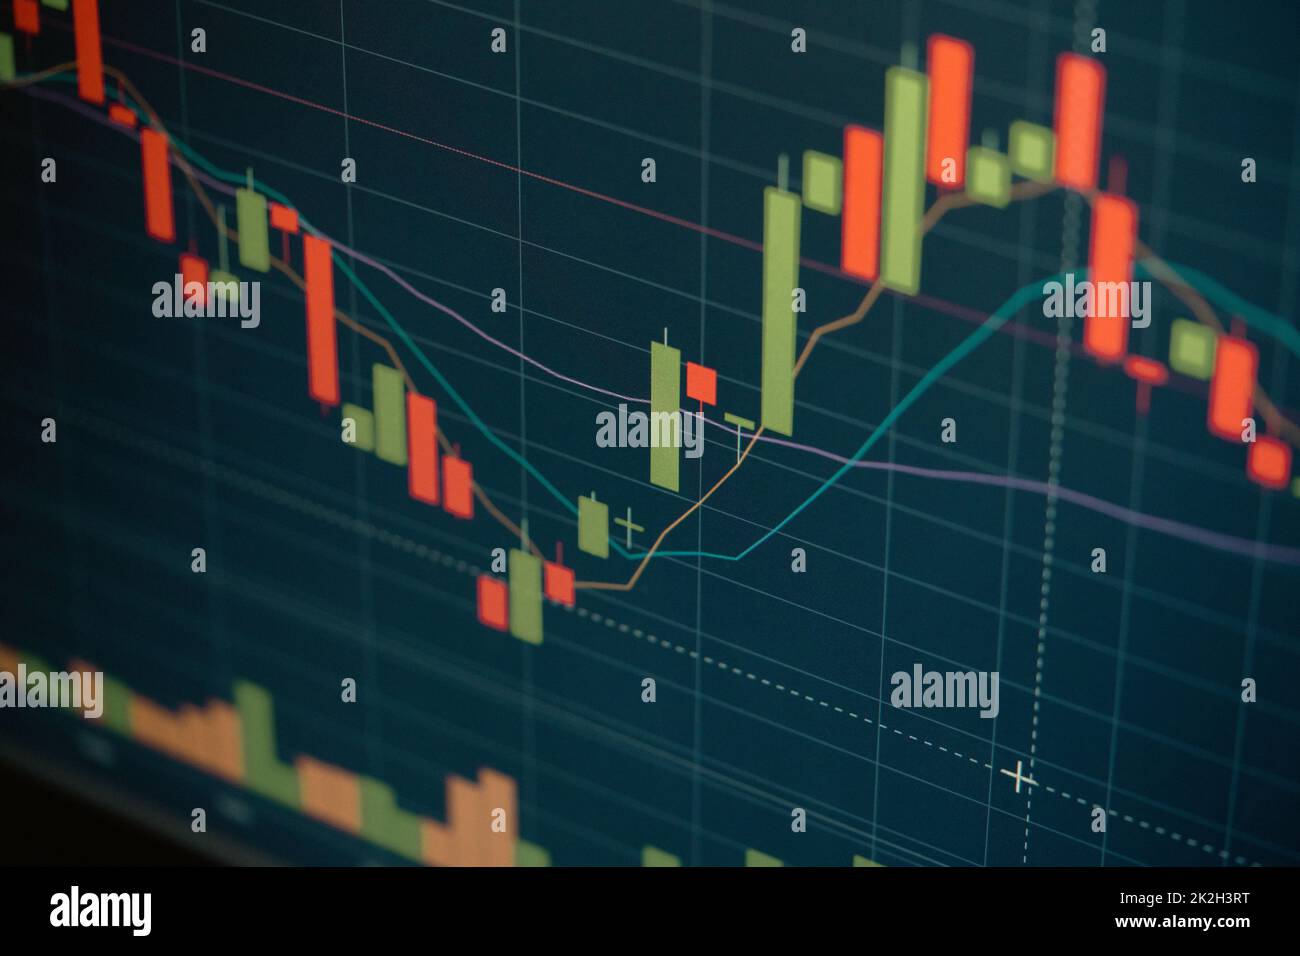 Schermo digitale con grafico di trading finanziario e trend dei prezzi di criptovaluta. Foto Stock